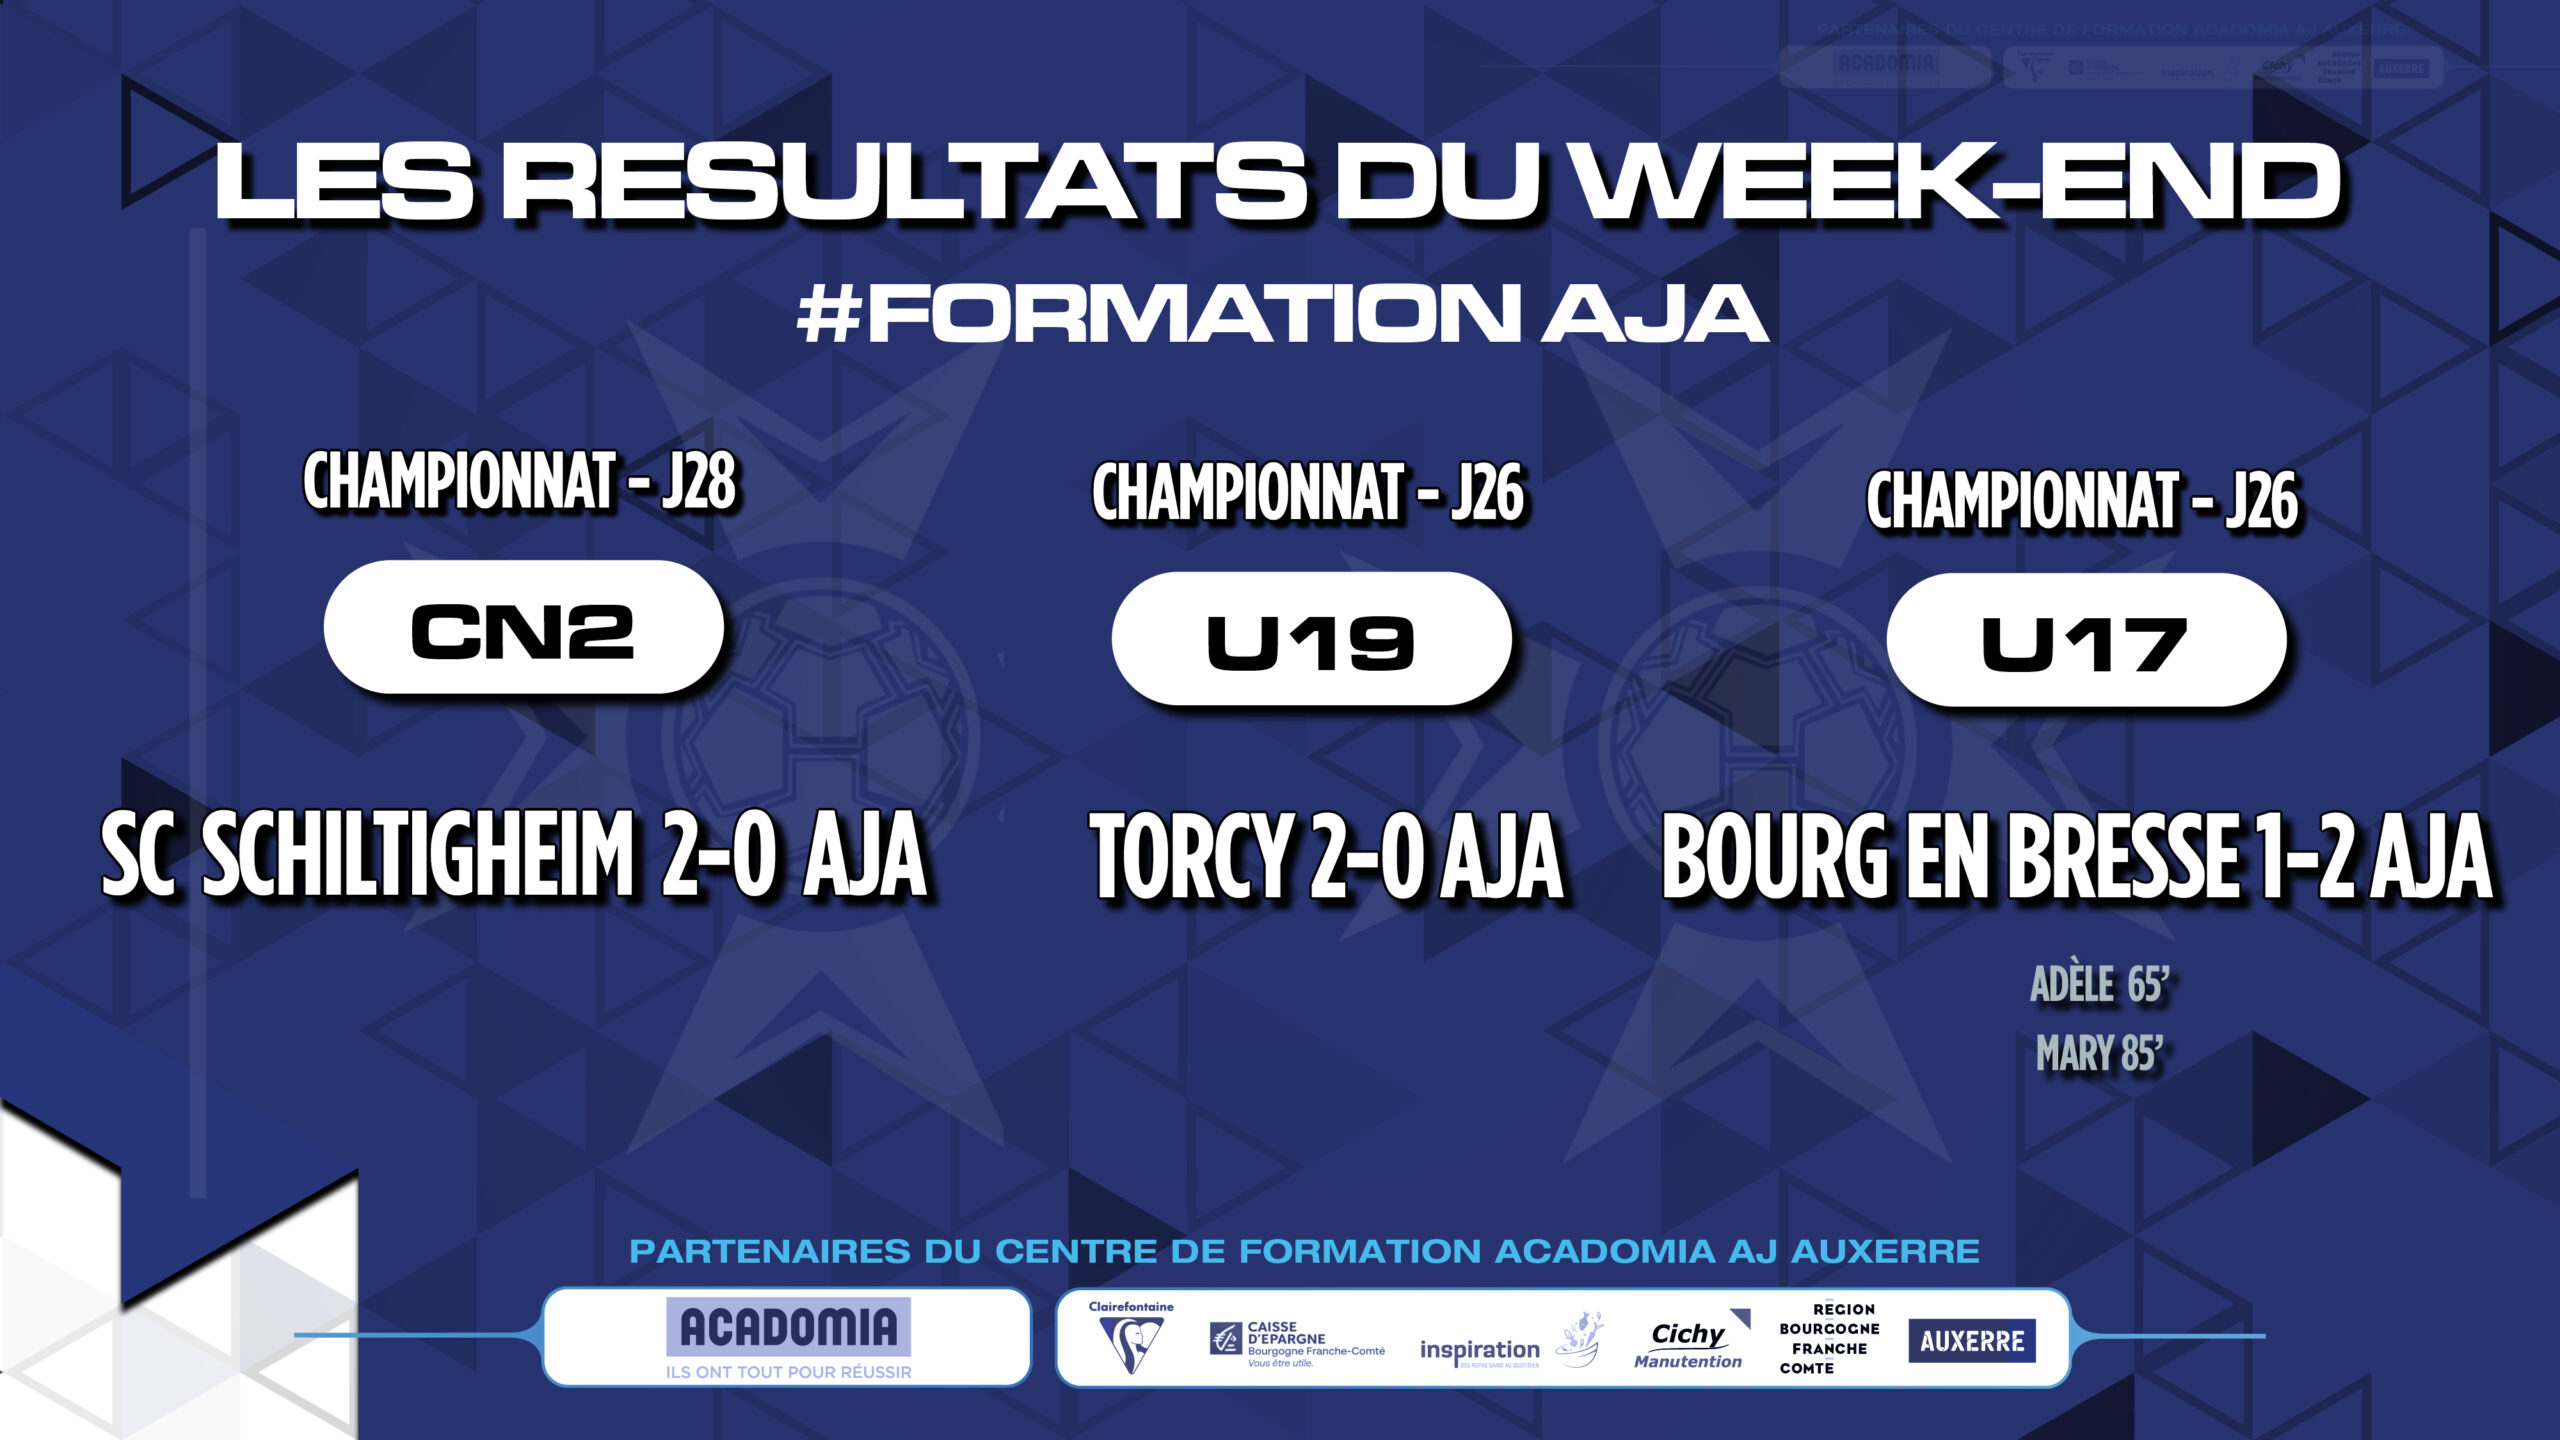 Les résultats du week-end pour la Formation AJA (week-end du 14-15 mai)